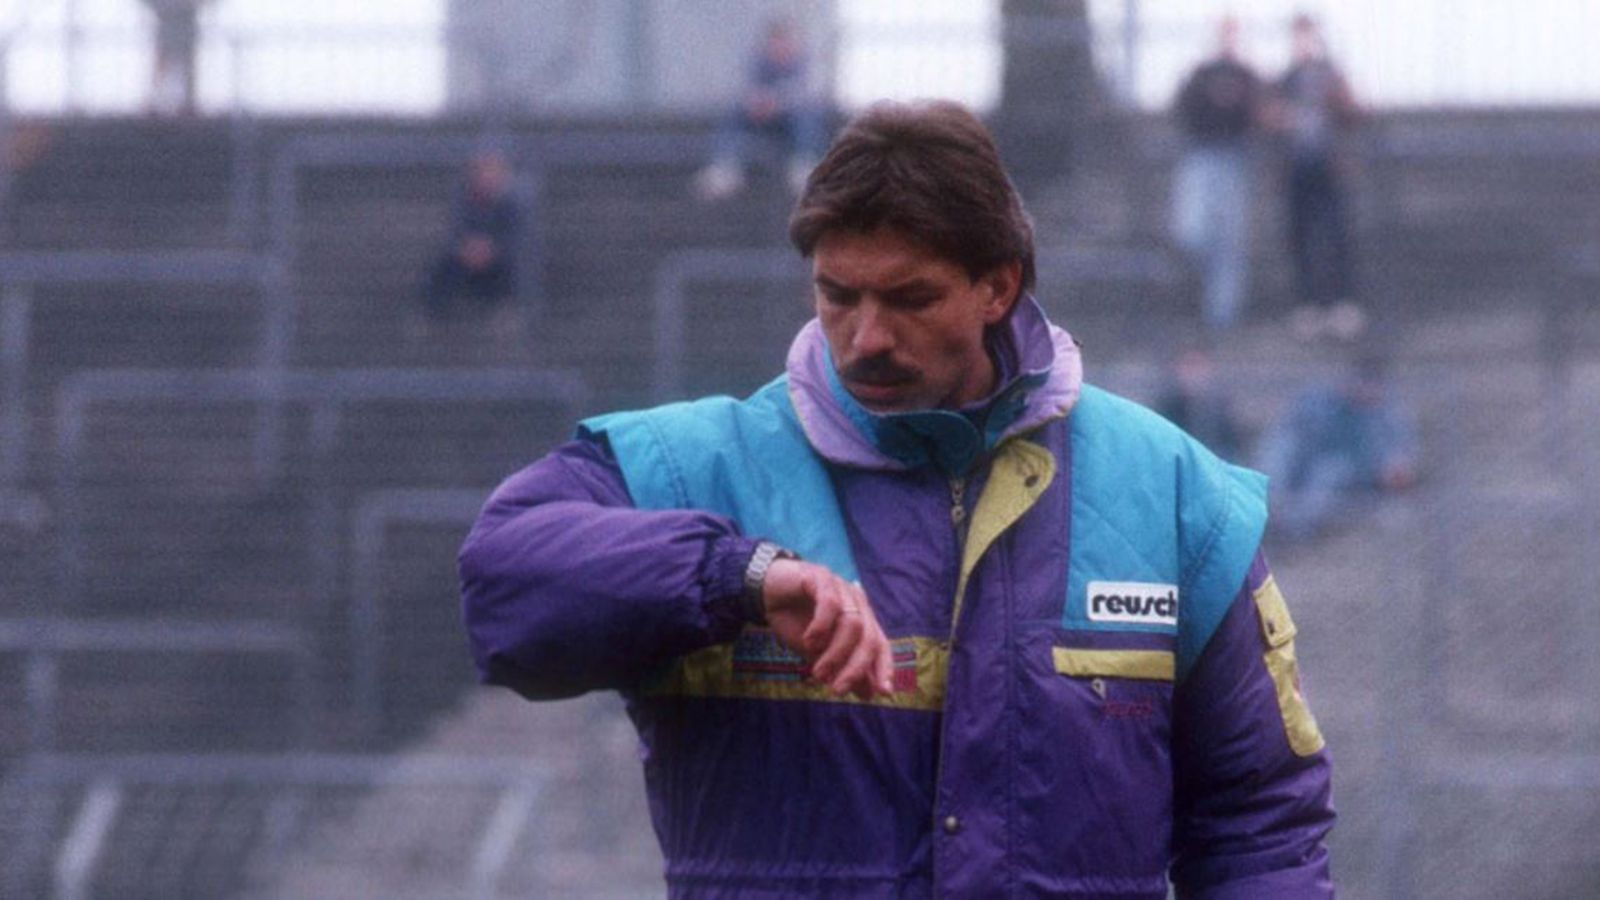 
                <strong>Platz 6: Hans-Jürgen Gede, 53 Tage</strong><br>
                Er war Trainer Nummer 3 in der Saison 1991/92 bei Fortuna Düsseldorf. Nach nur 53 Tagen im Amt musste er Coach Nummer 4, Horst Köppel, Platz machen.
              